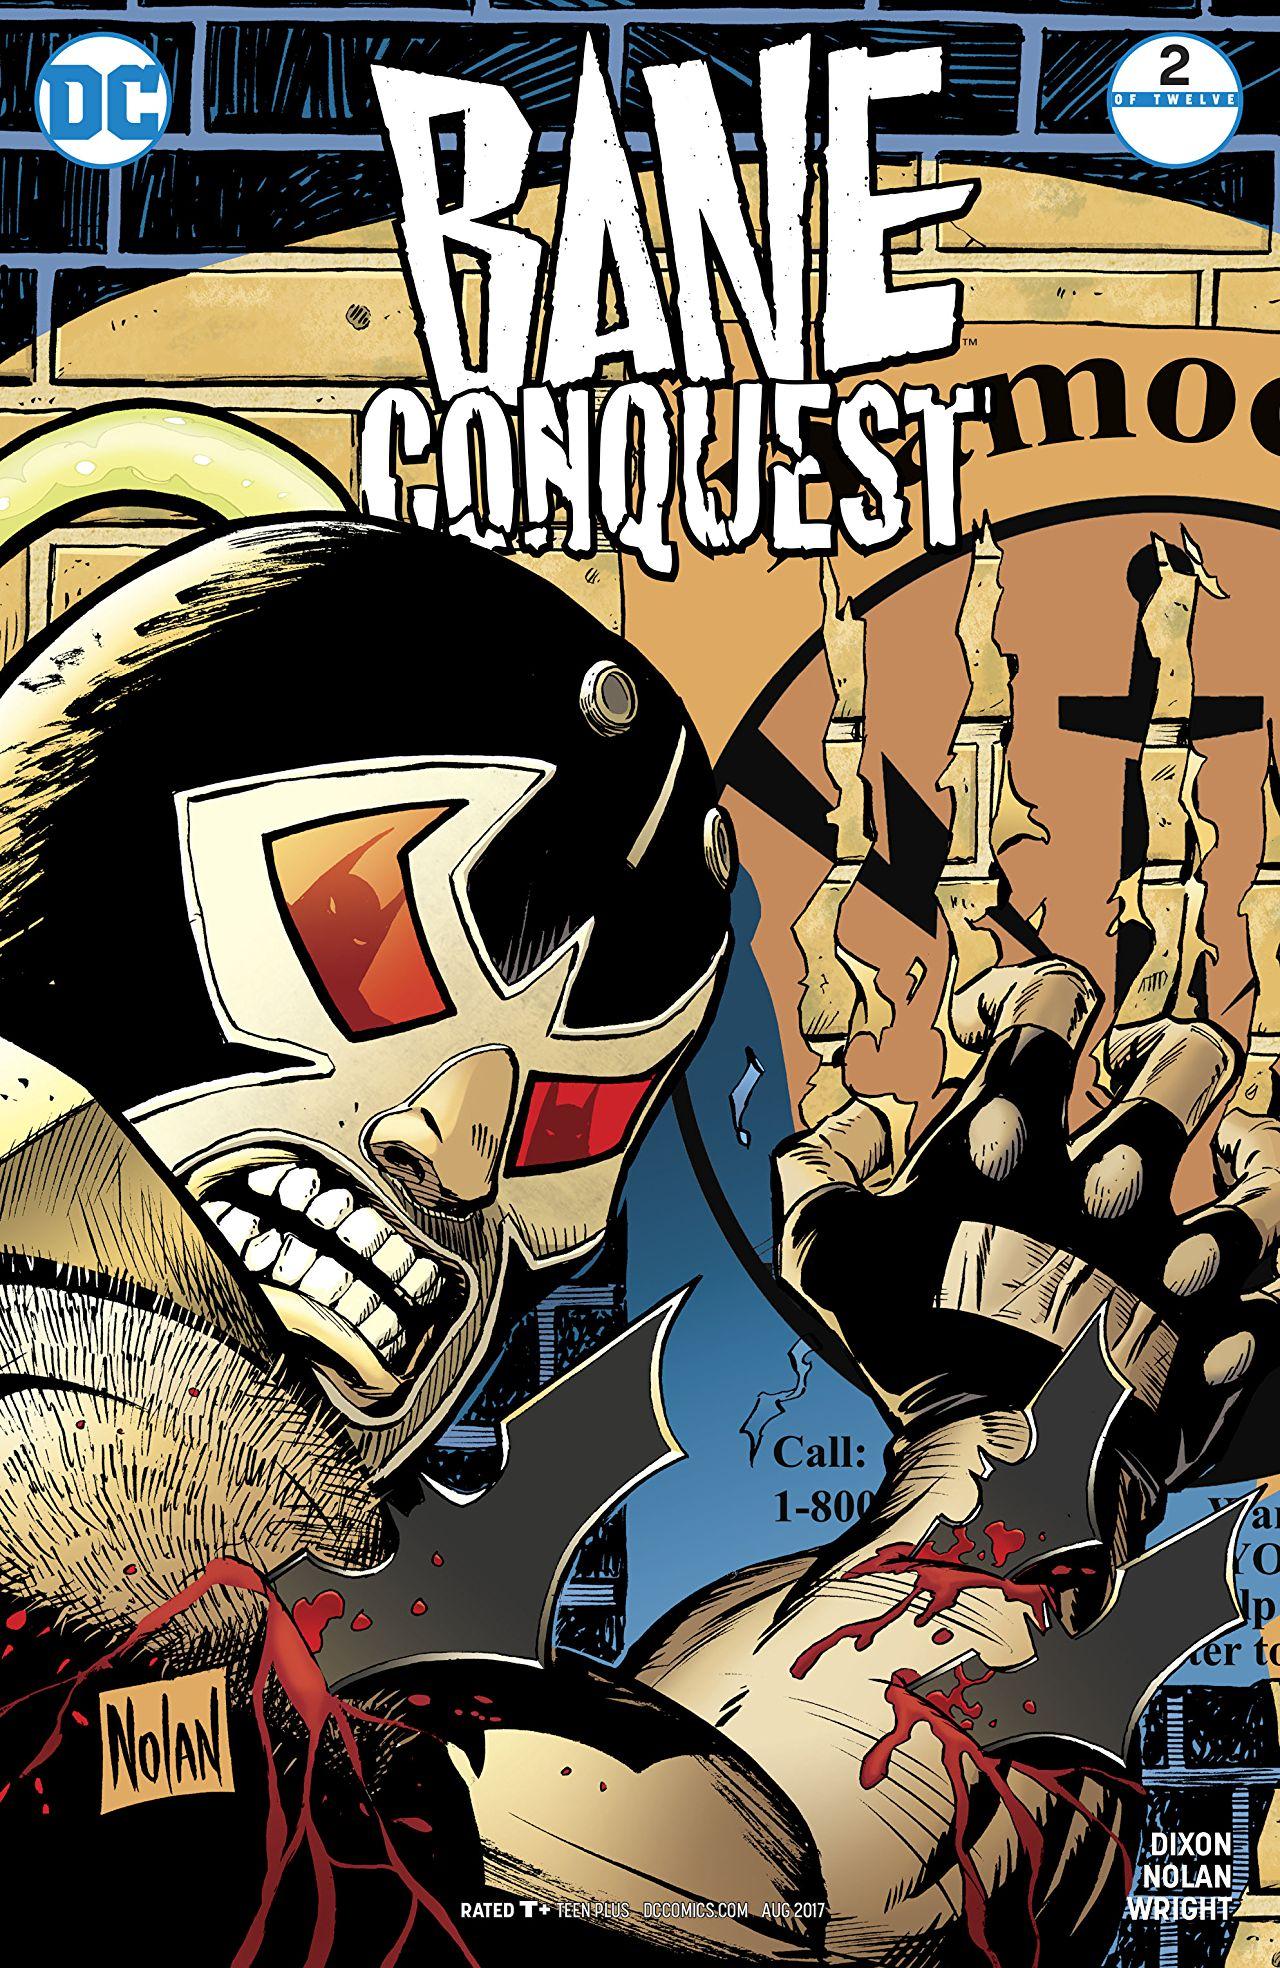 Bane: Conquest Vol. 1 #2